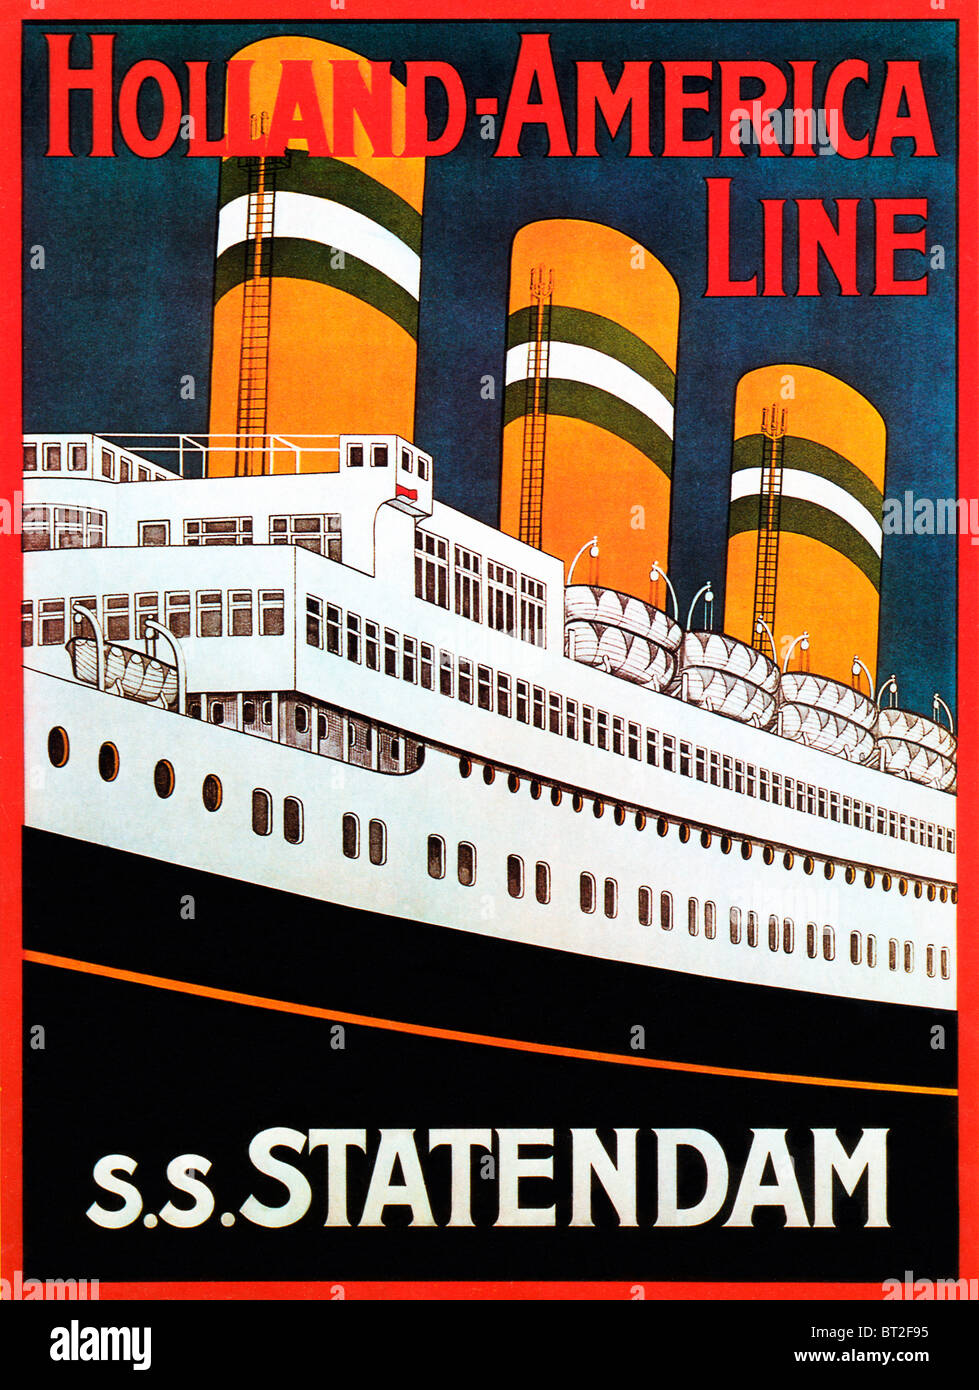 SS Statendam, 1930er Jahre Poster für die Holland-America Line Transatlantik Liner, der dritte dieses Namens Stockfoto